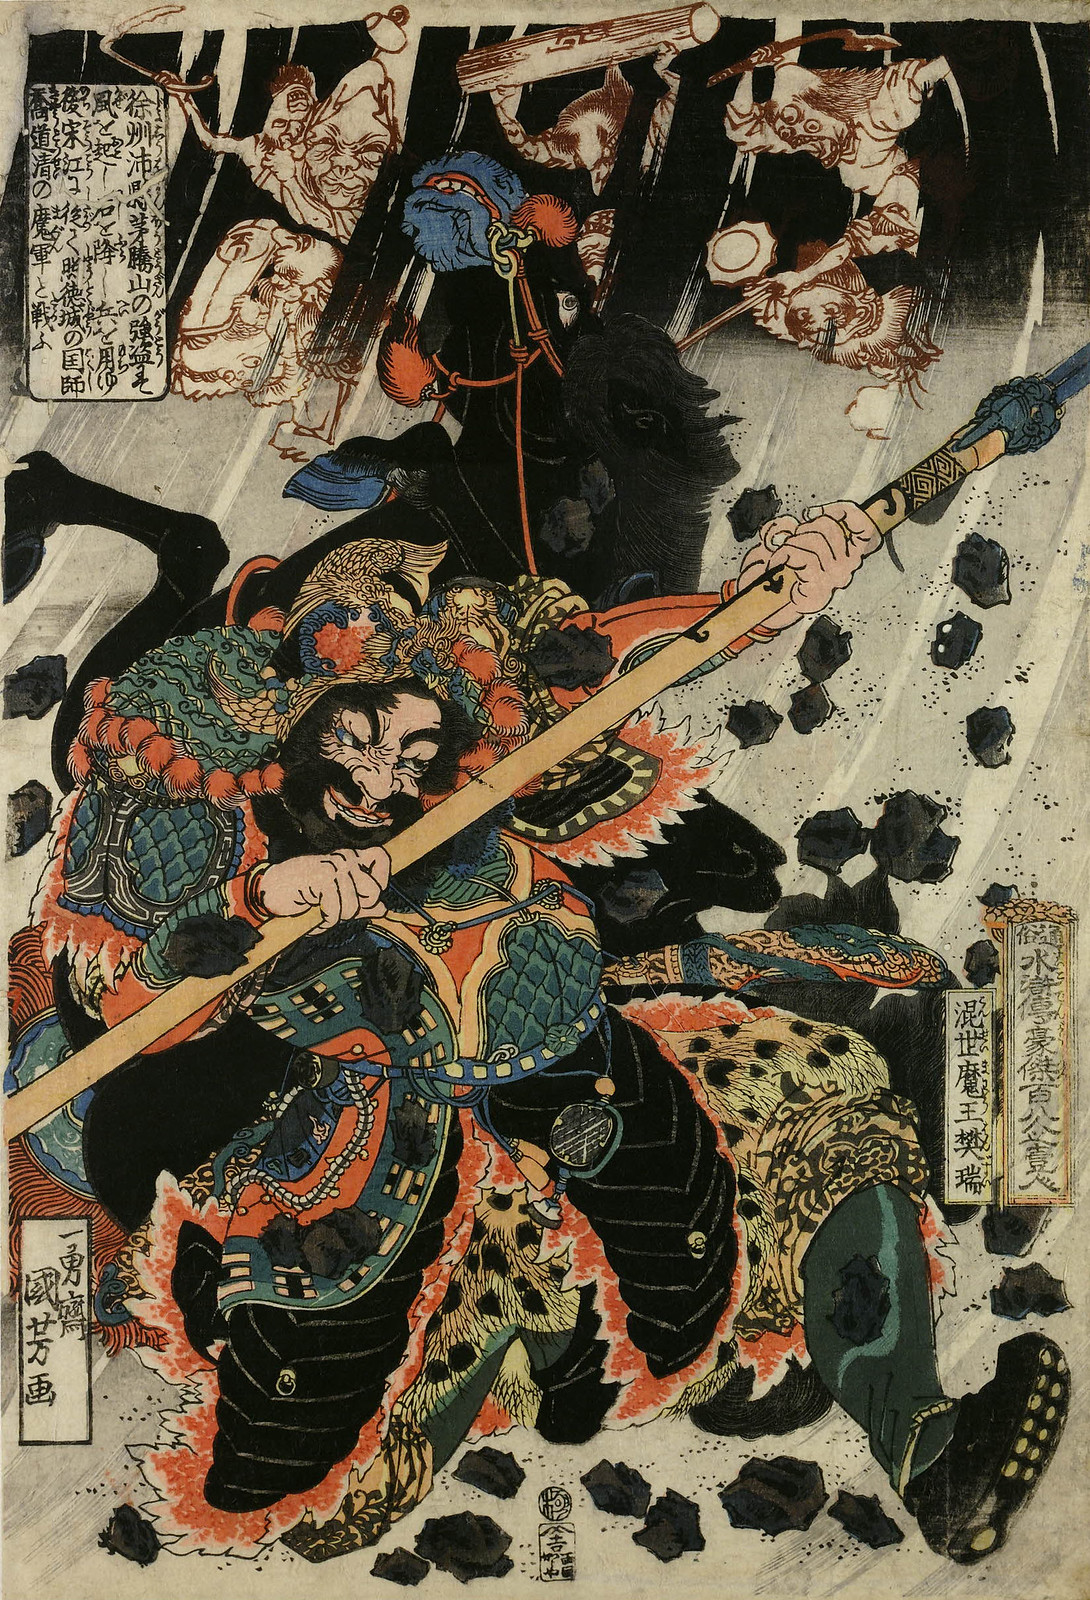 Utagawa Kuniyoshi - Tsuzoku Suikoden Goketsu Hyakuhachi-nin no Hitori Konsei Mao Bunzui invoking demons, stones and a storm by sorcery. 1827